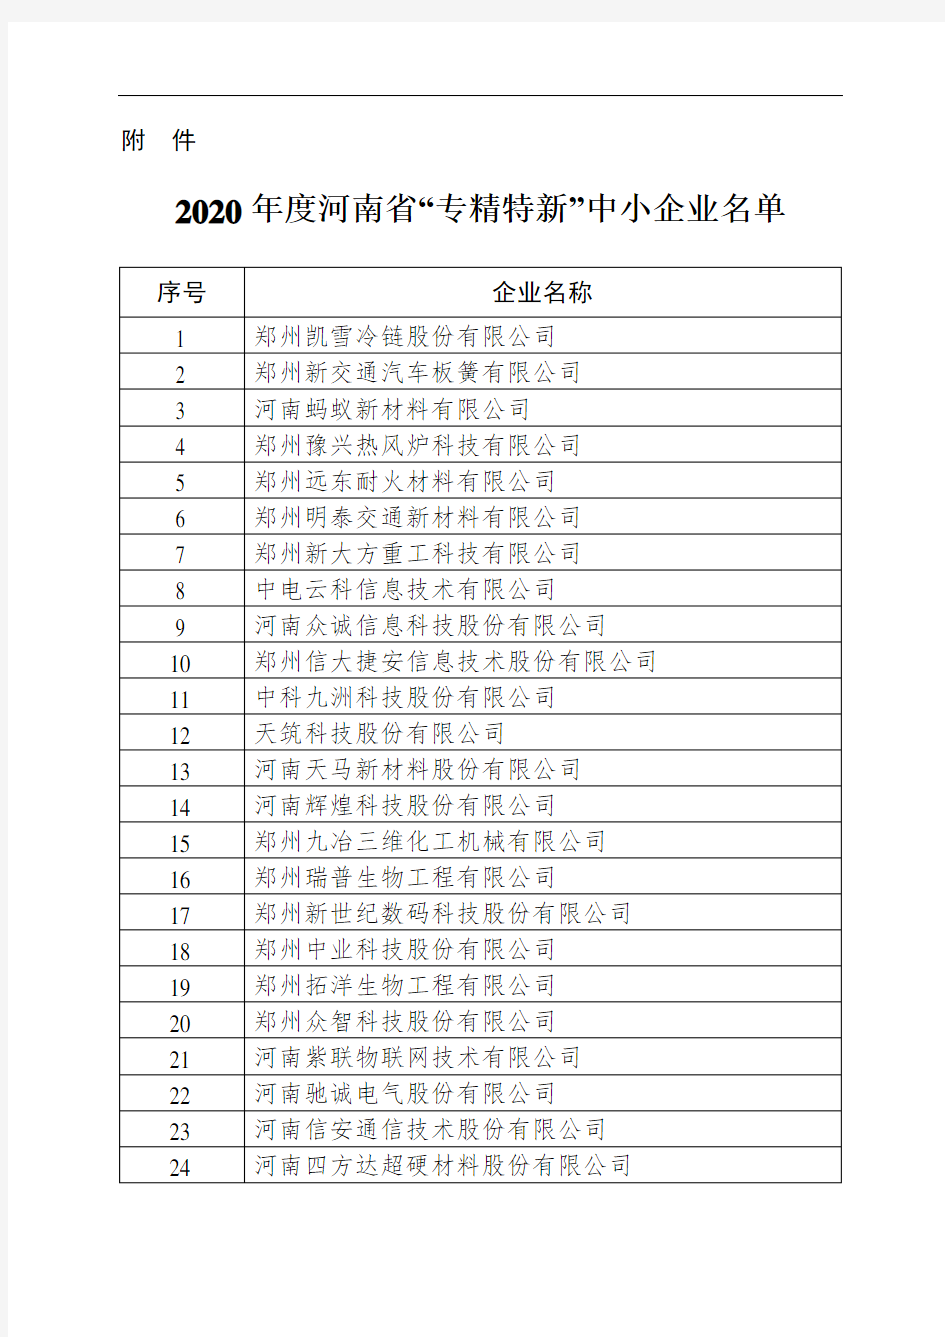 2020年度河南省“专精特新” 中小企业名单